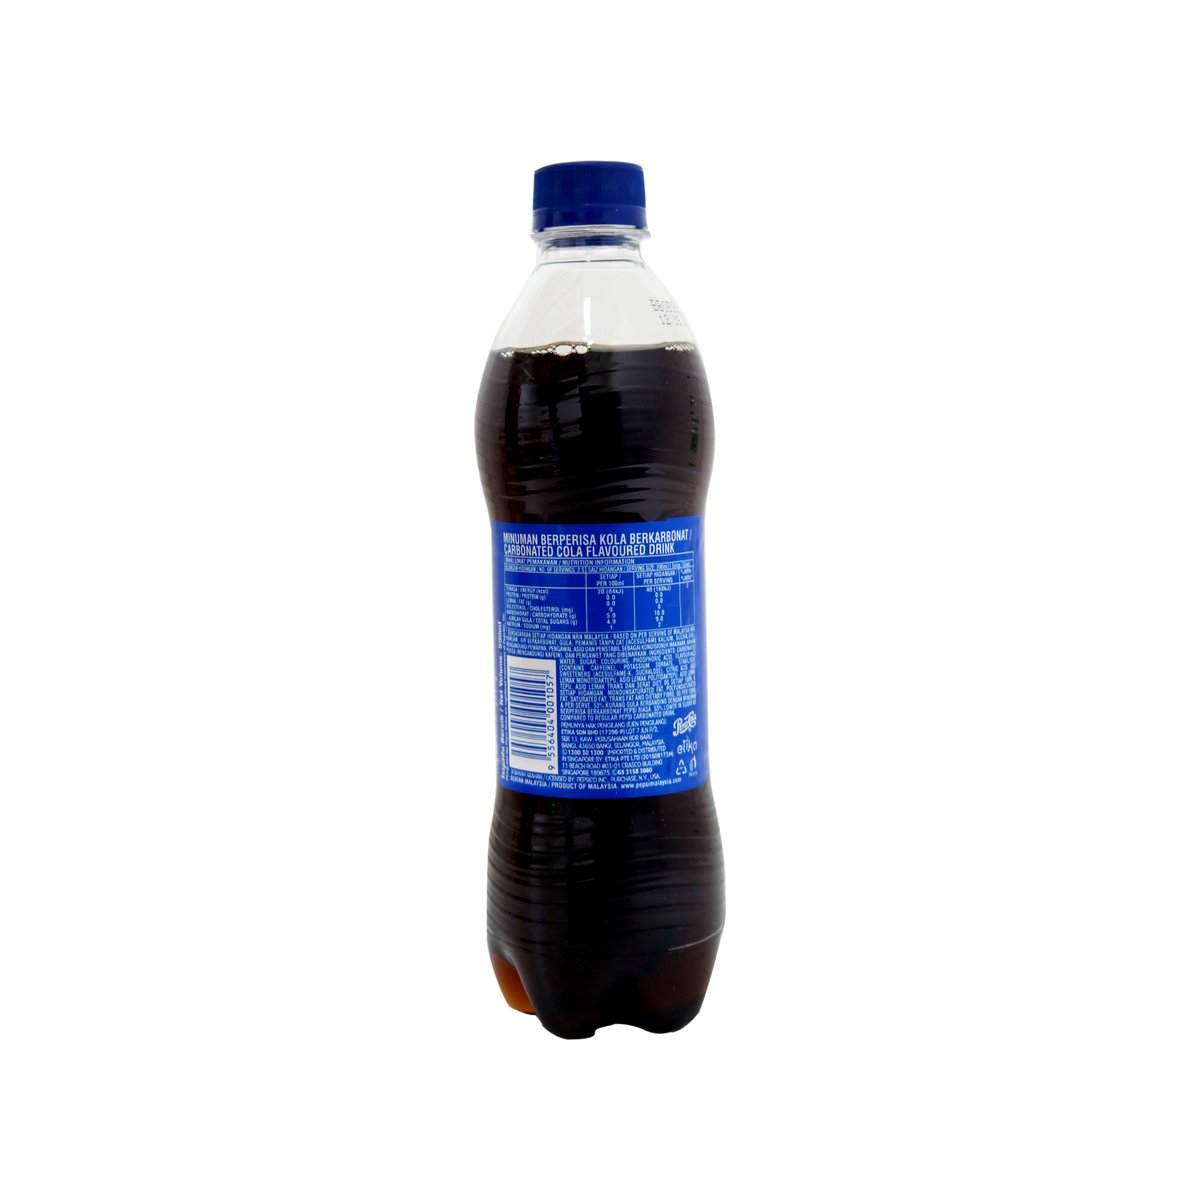 Pepsi Cola Pet 500ml